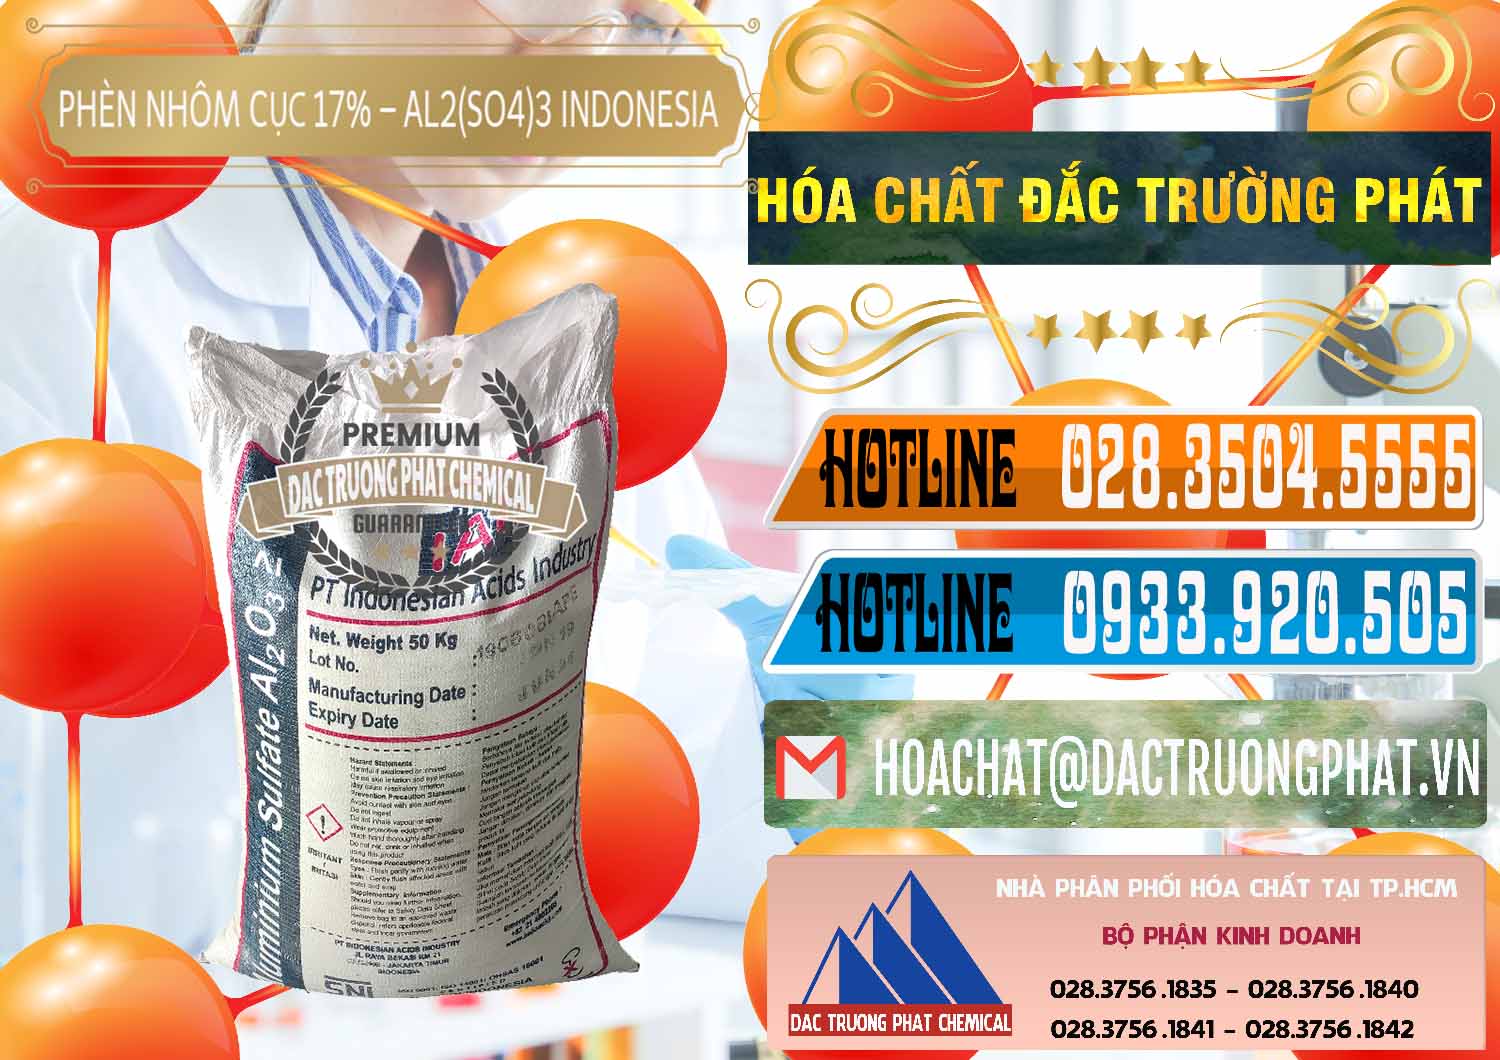 Cty cung ứng và bán Phèn Nhôm Cục - Al2(SO4)3 17% bao 50kg Indonesia - 0113 - Chuyên cung cấp & nhập khẩu hóa chất tại TP.HCM - stmp.net